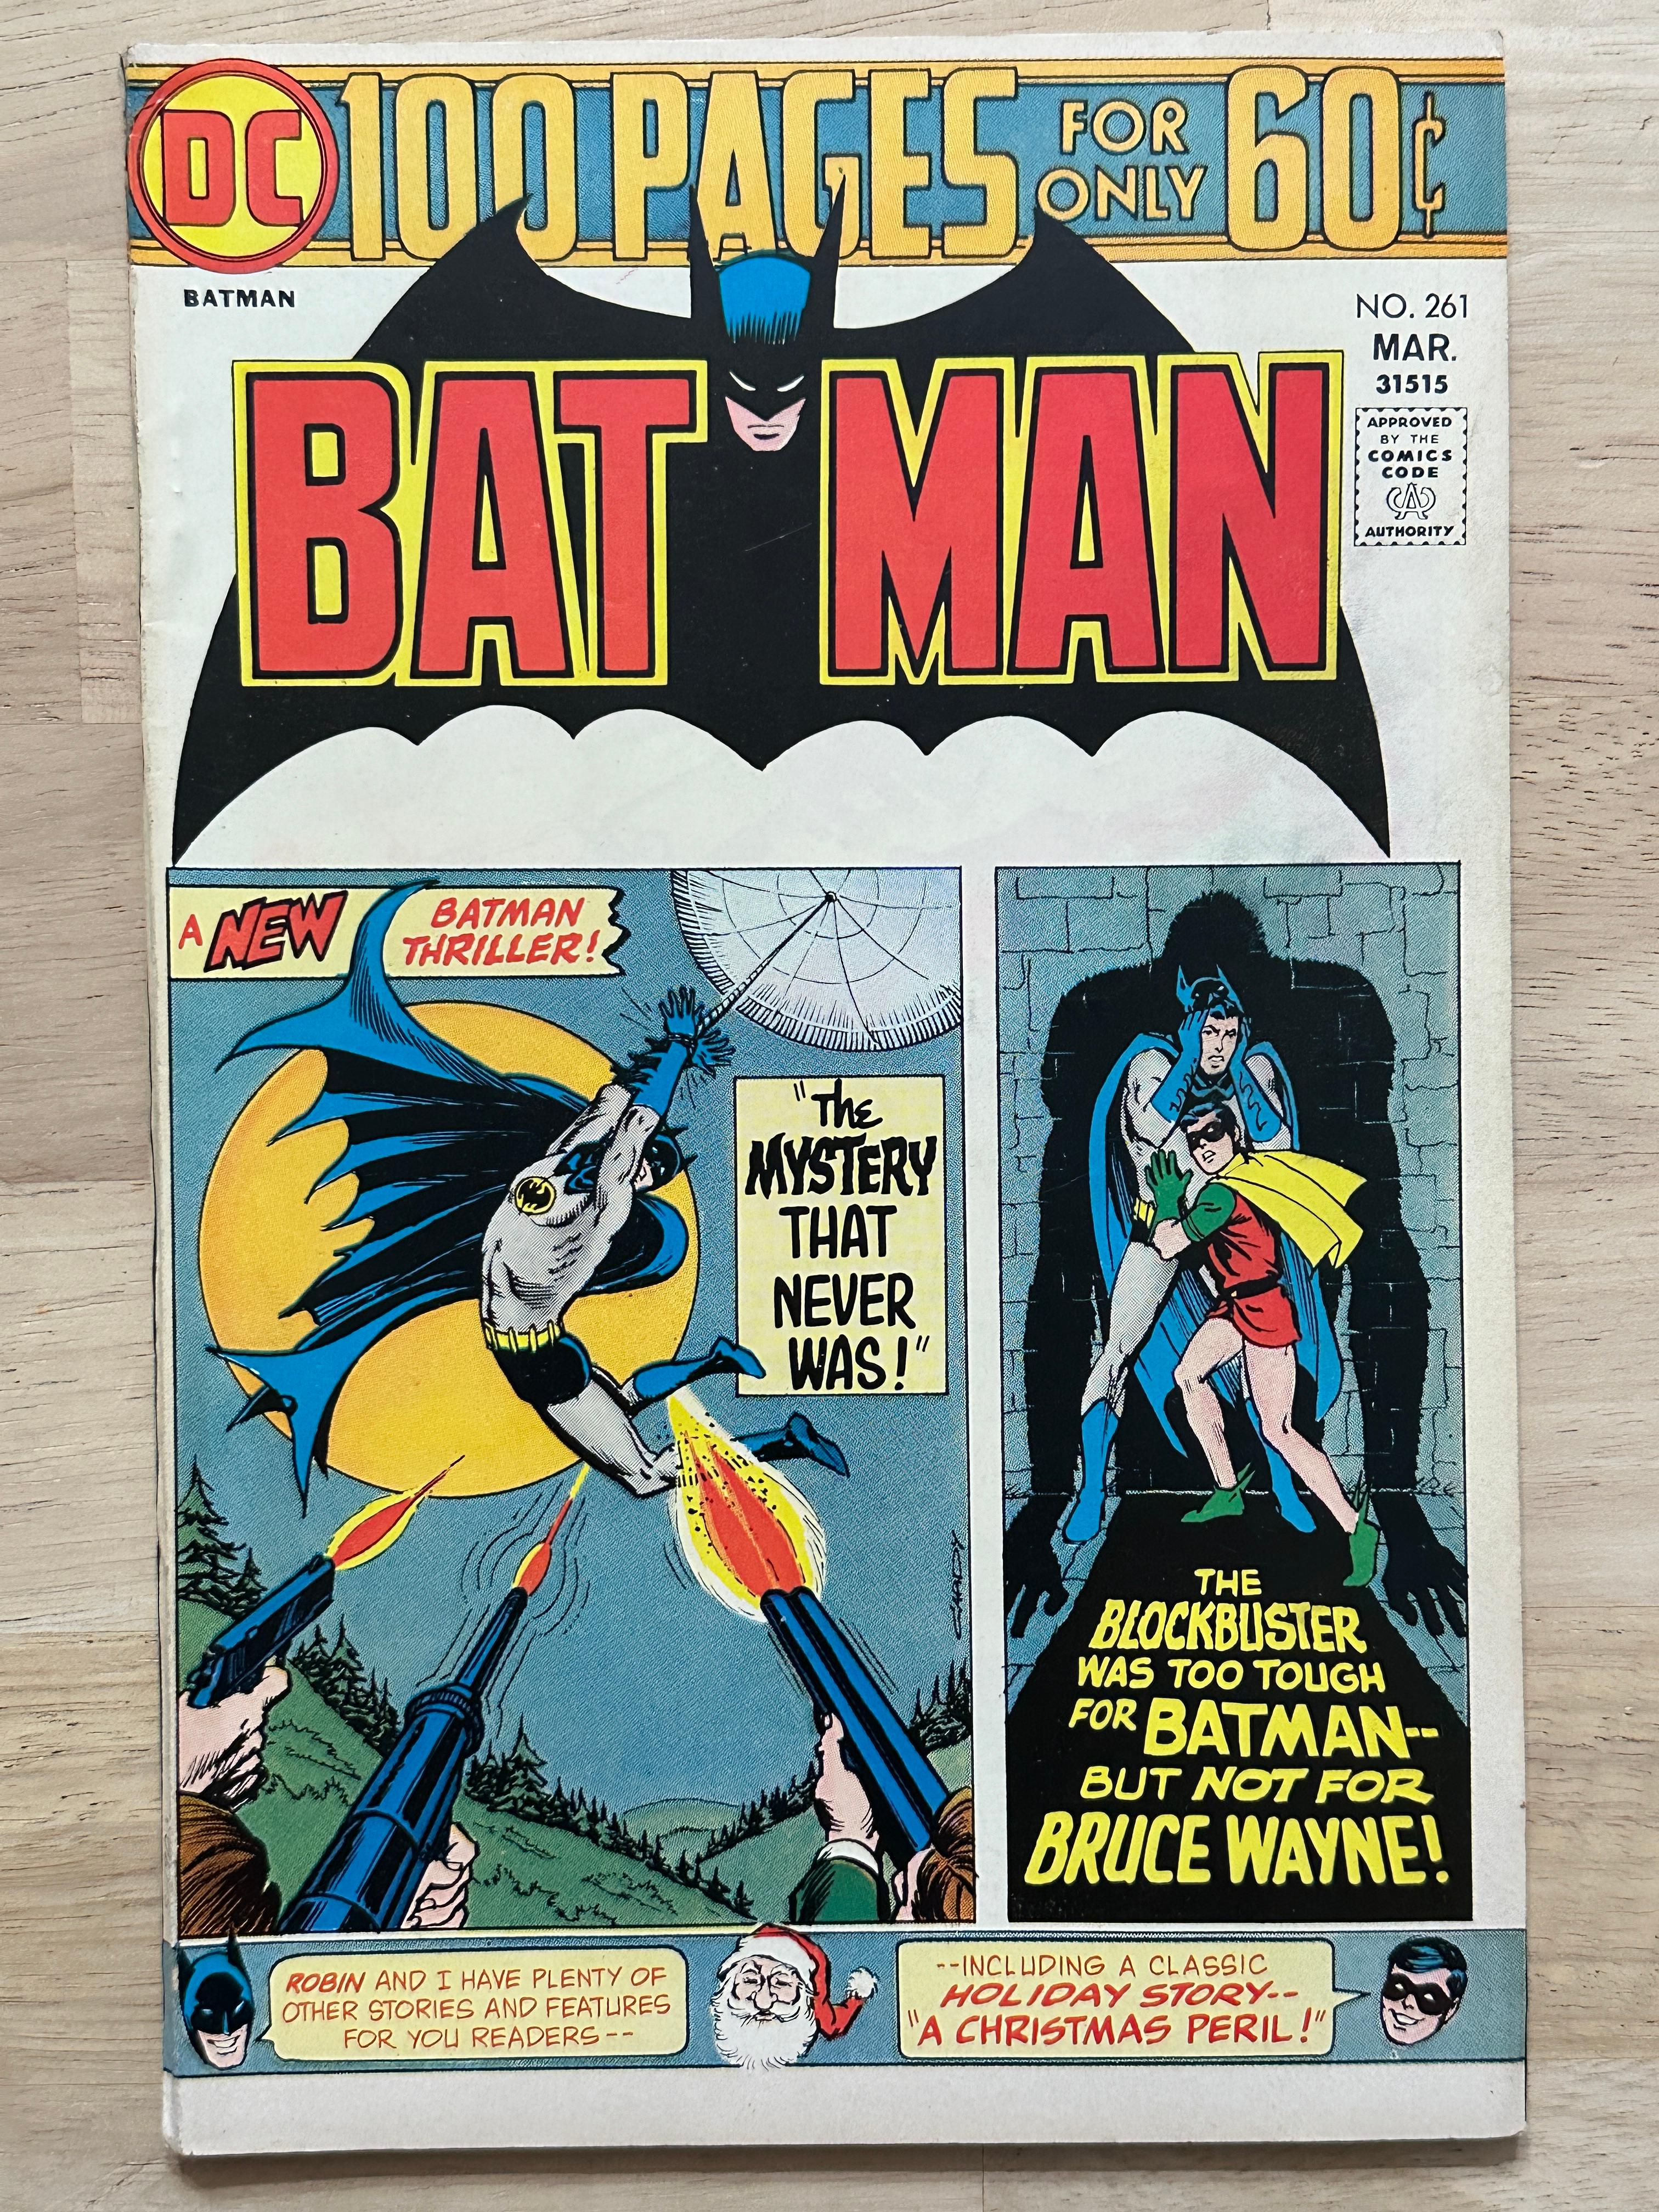 (6) Vintage DC Batman Comics